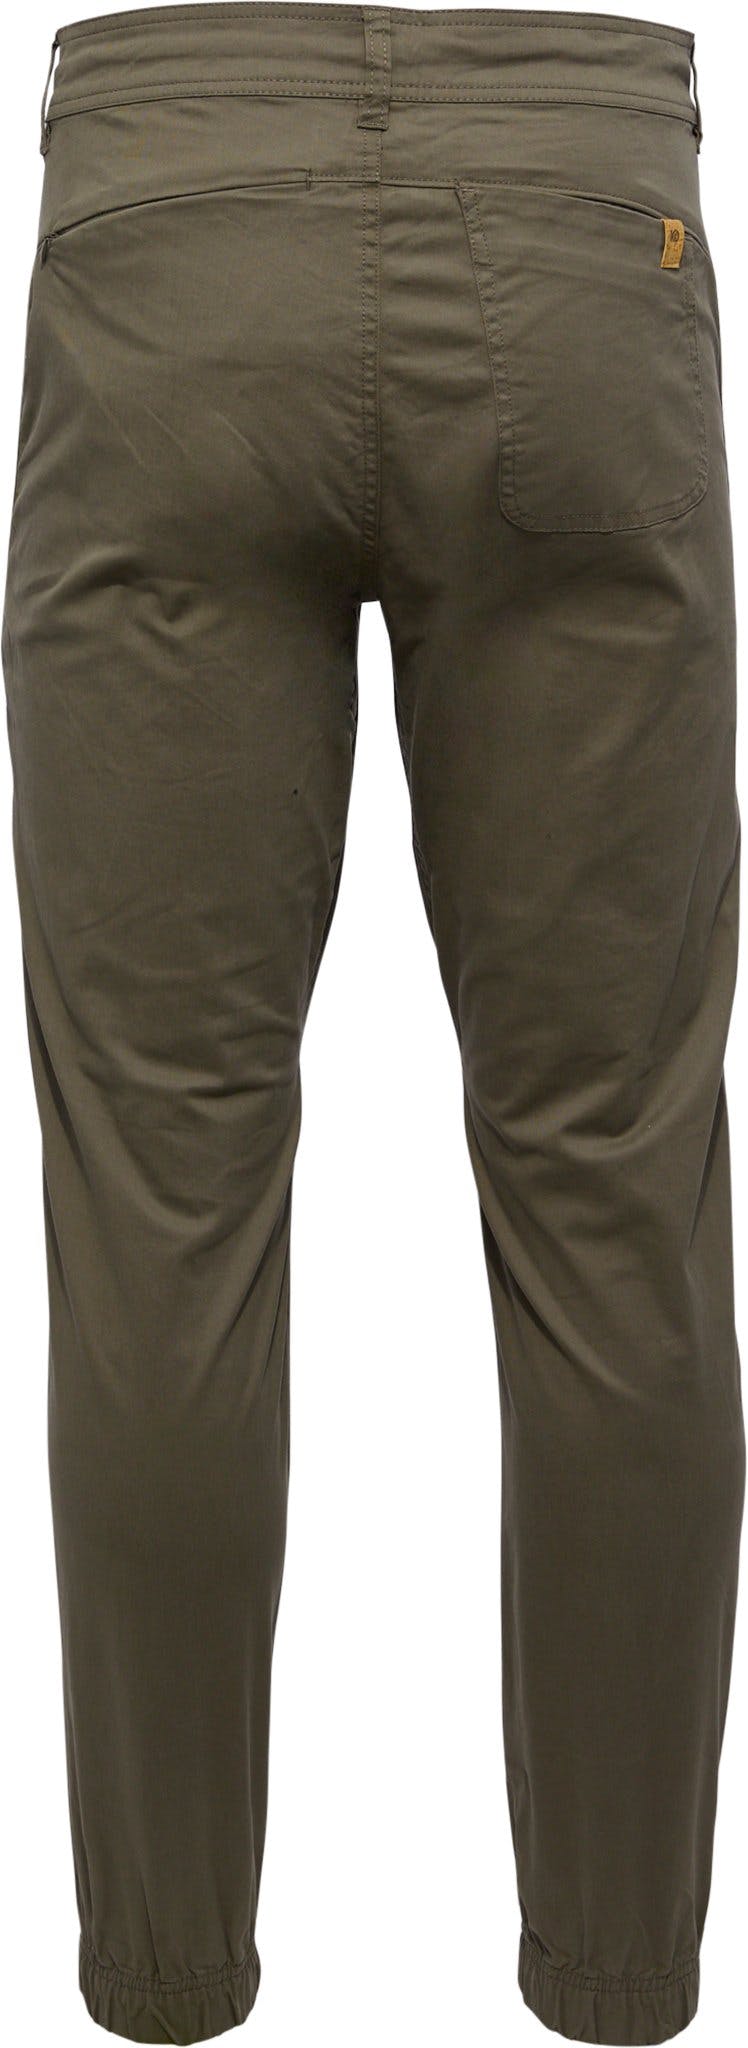 Numéro de l'image de la galerie de produits 3 pour le produit Pantalon de jogging en sergé - Homme